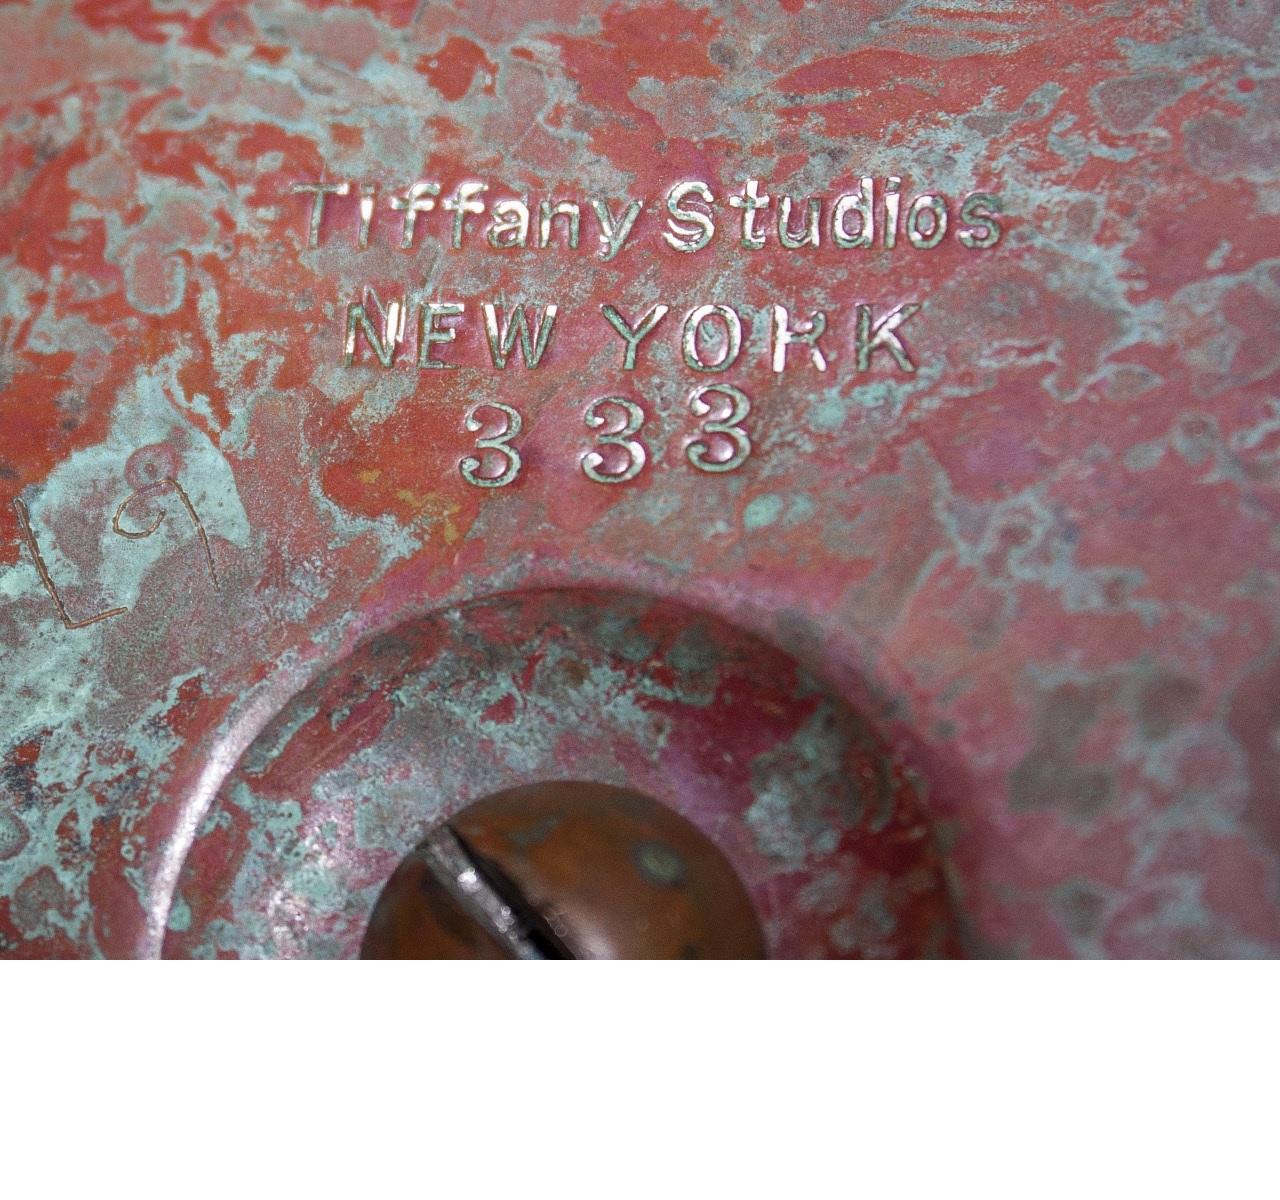 Tiffany Studios New York 